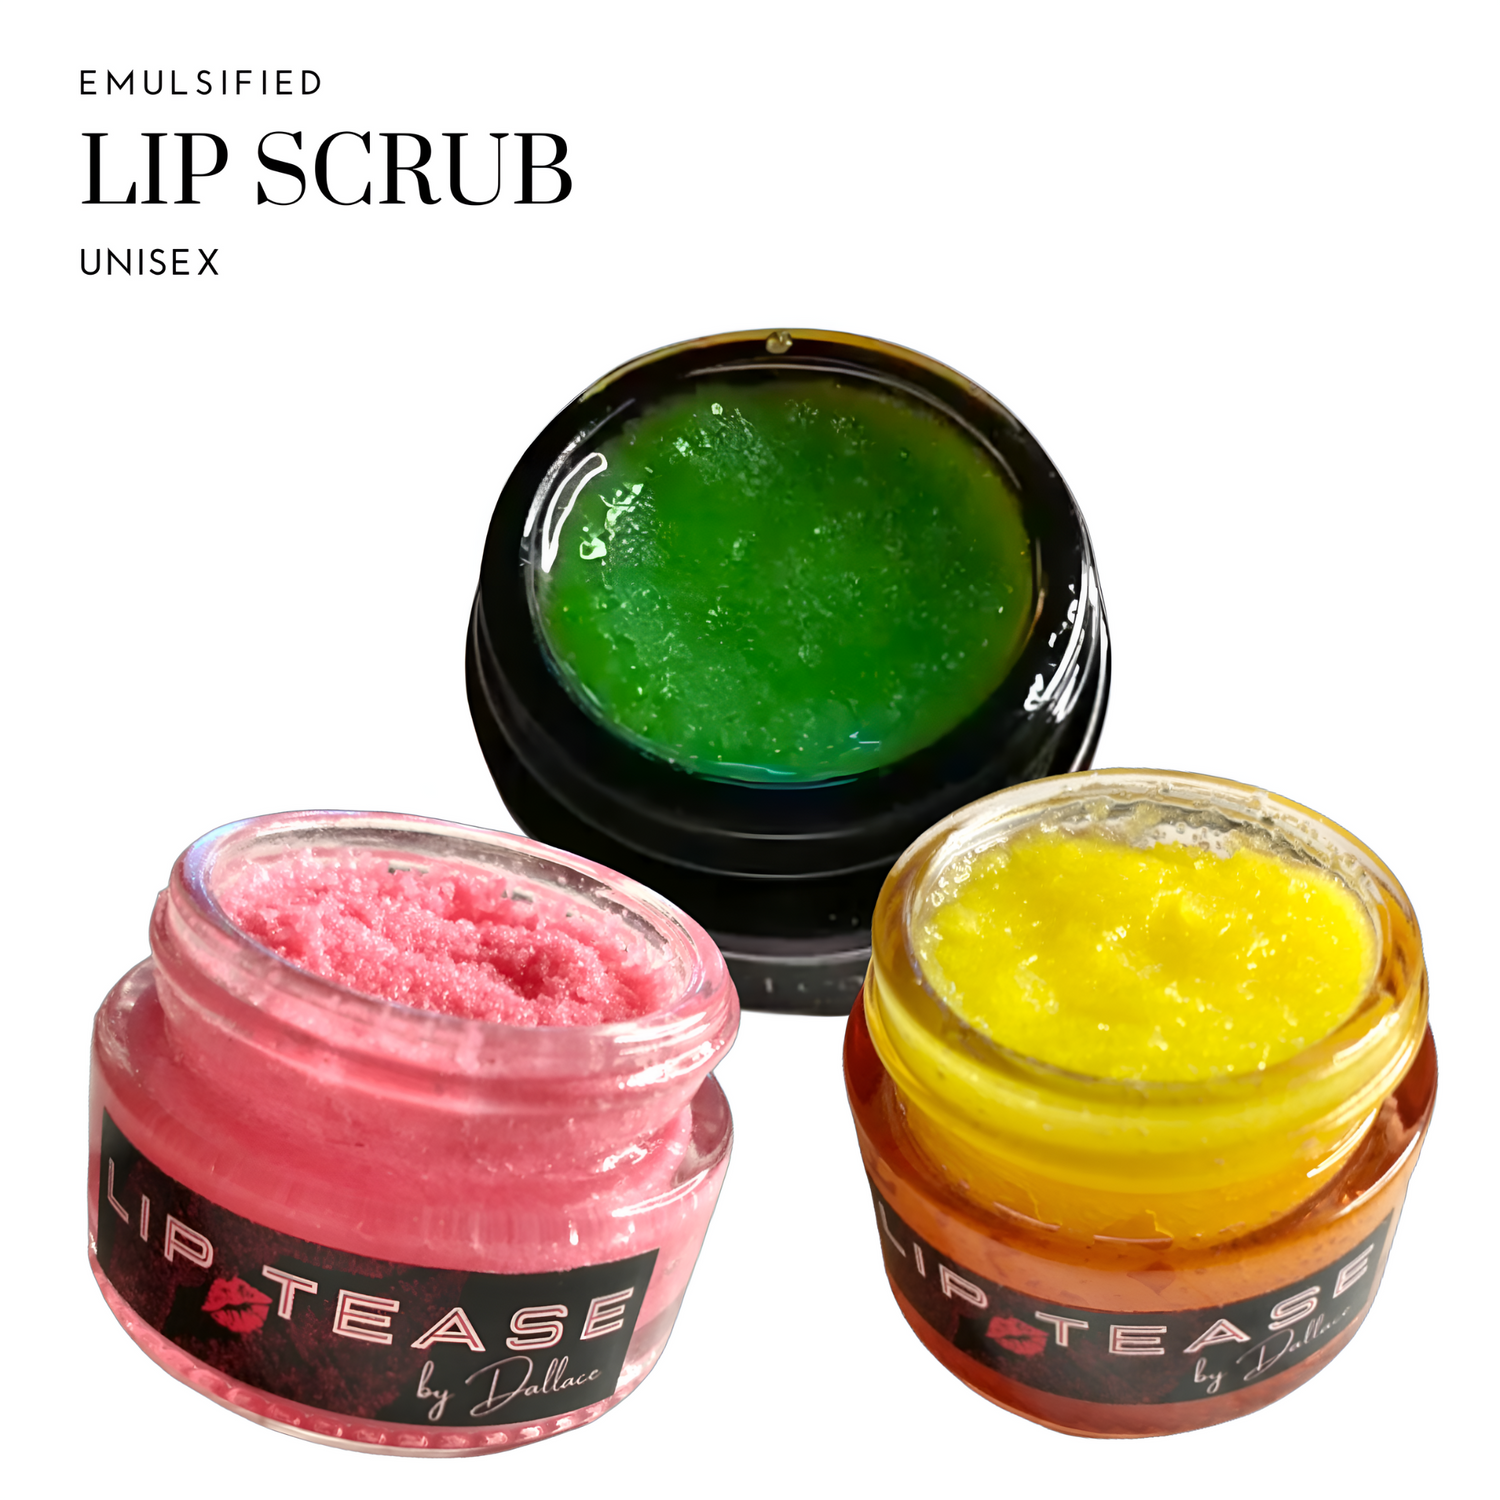 Emulsified Sugar Lip Scrub Lip Scrub Lip Tease by Dallace    